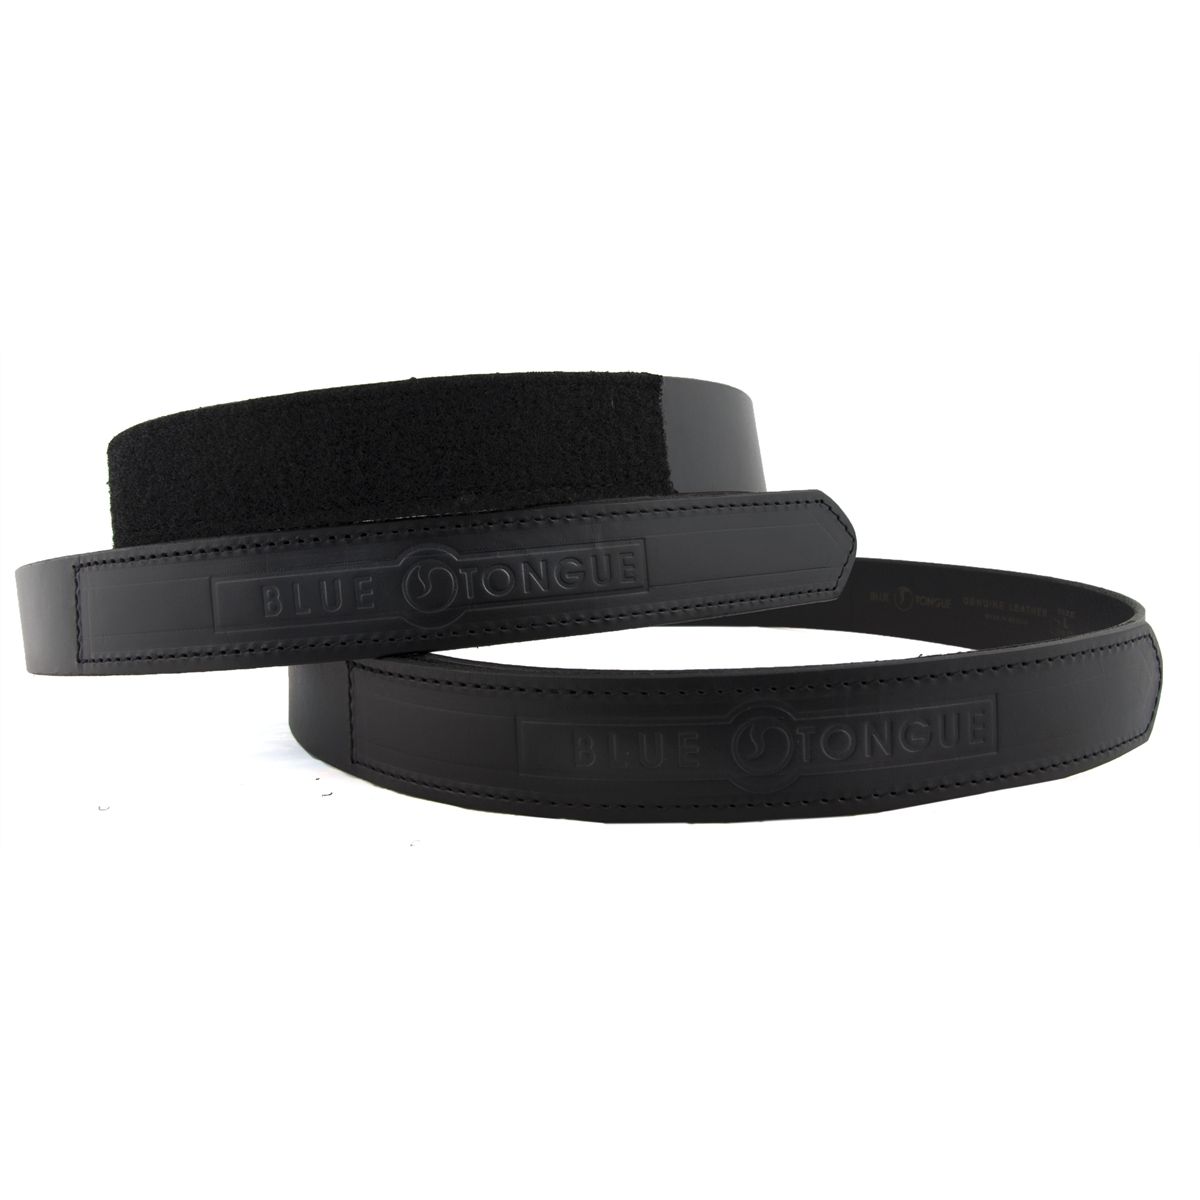 Black Velcro enclosure belt Fits sizes 44-46